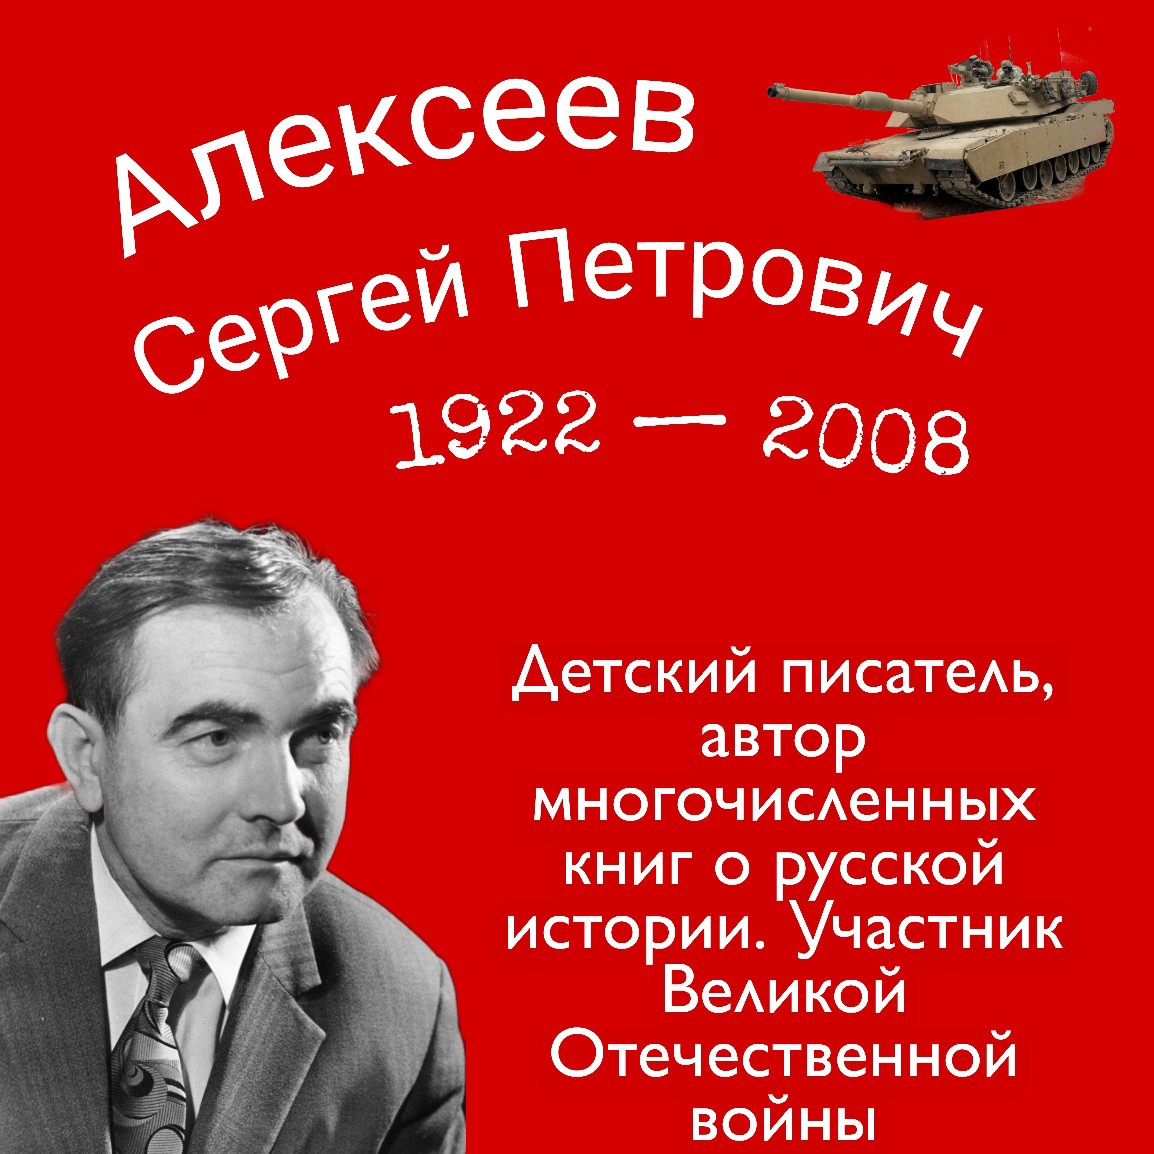 Алексеев писатель википедия. Сергея Петровича Алексеева (1922–2008).